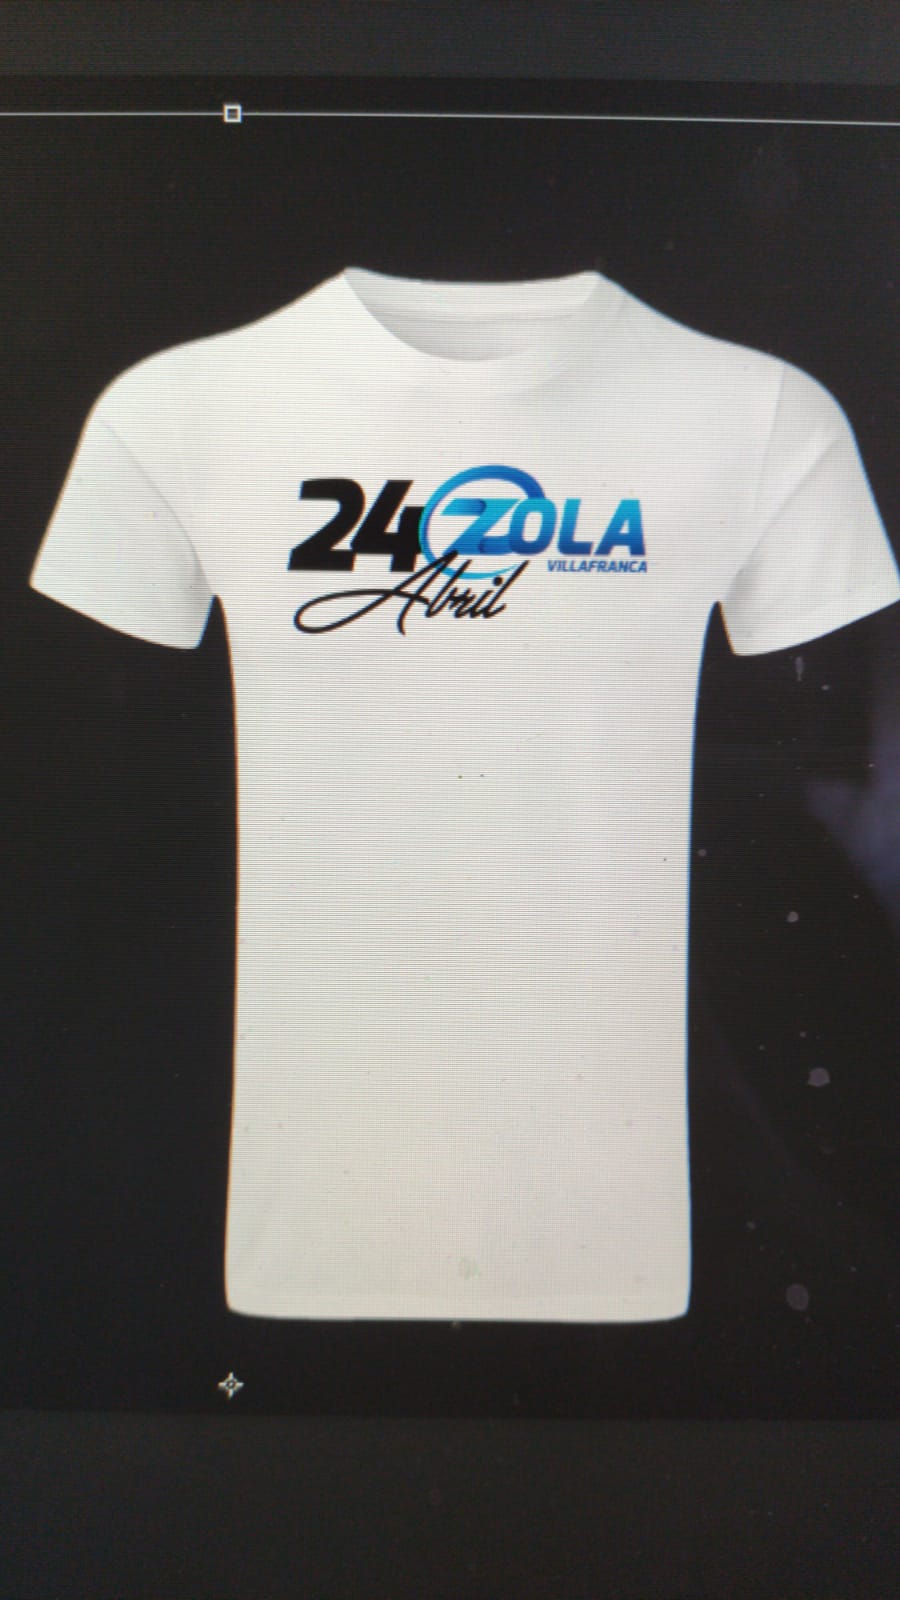 Fiesta Be Zola el 24 de Abril. ¡Estáis todos invitados! ¡Ya tenemos camiseta!